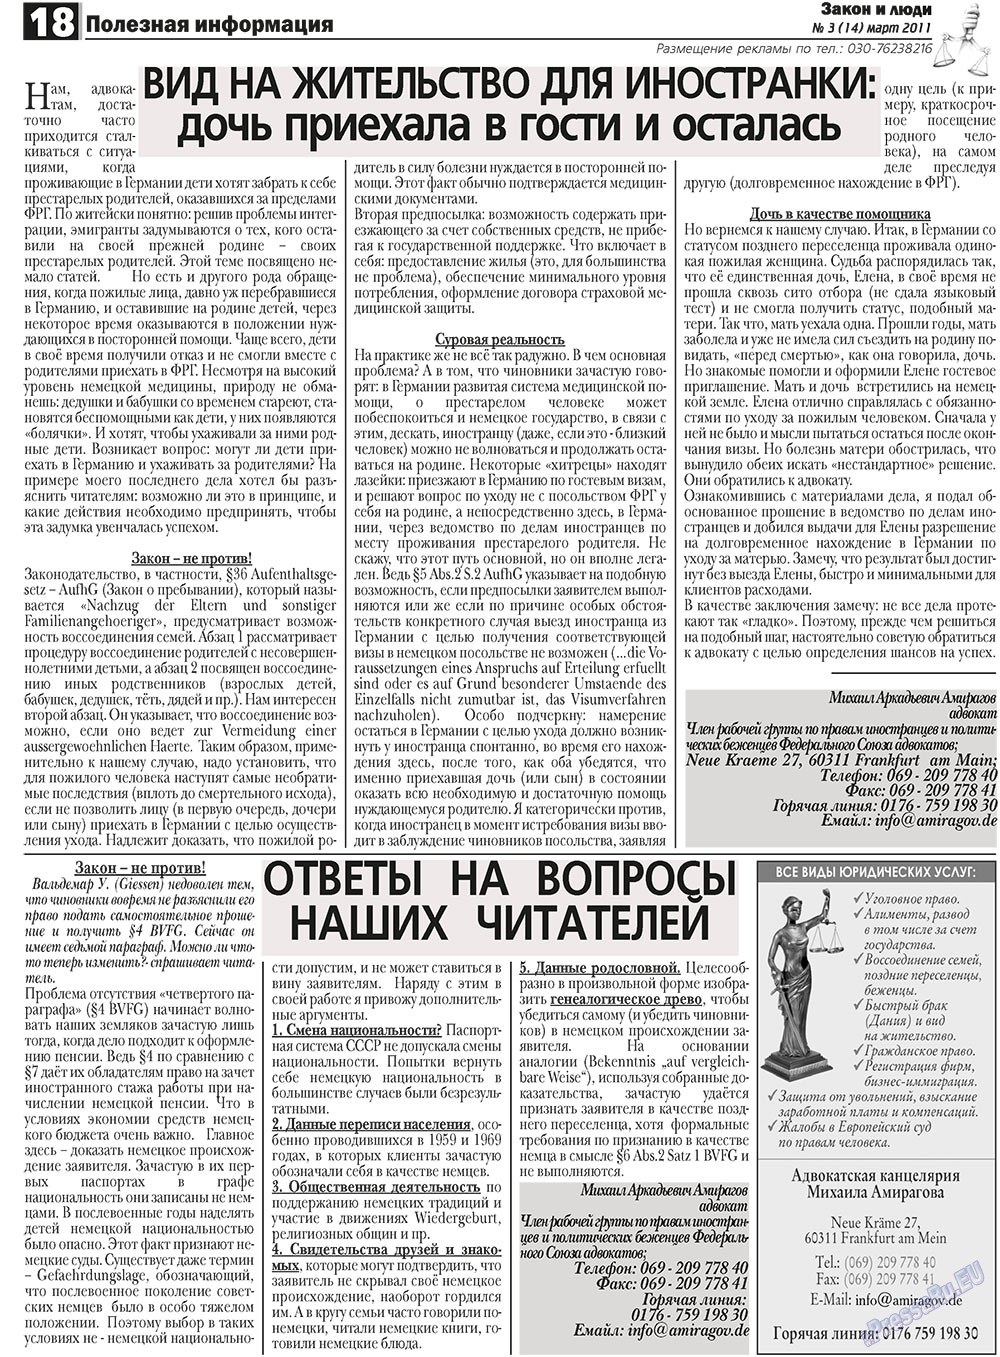 Закон и люди, газета. 2011 №3 стр.18